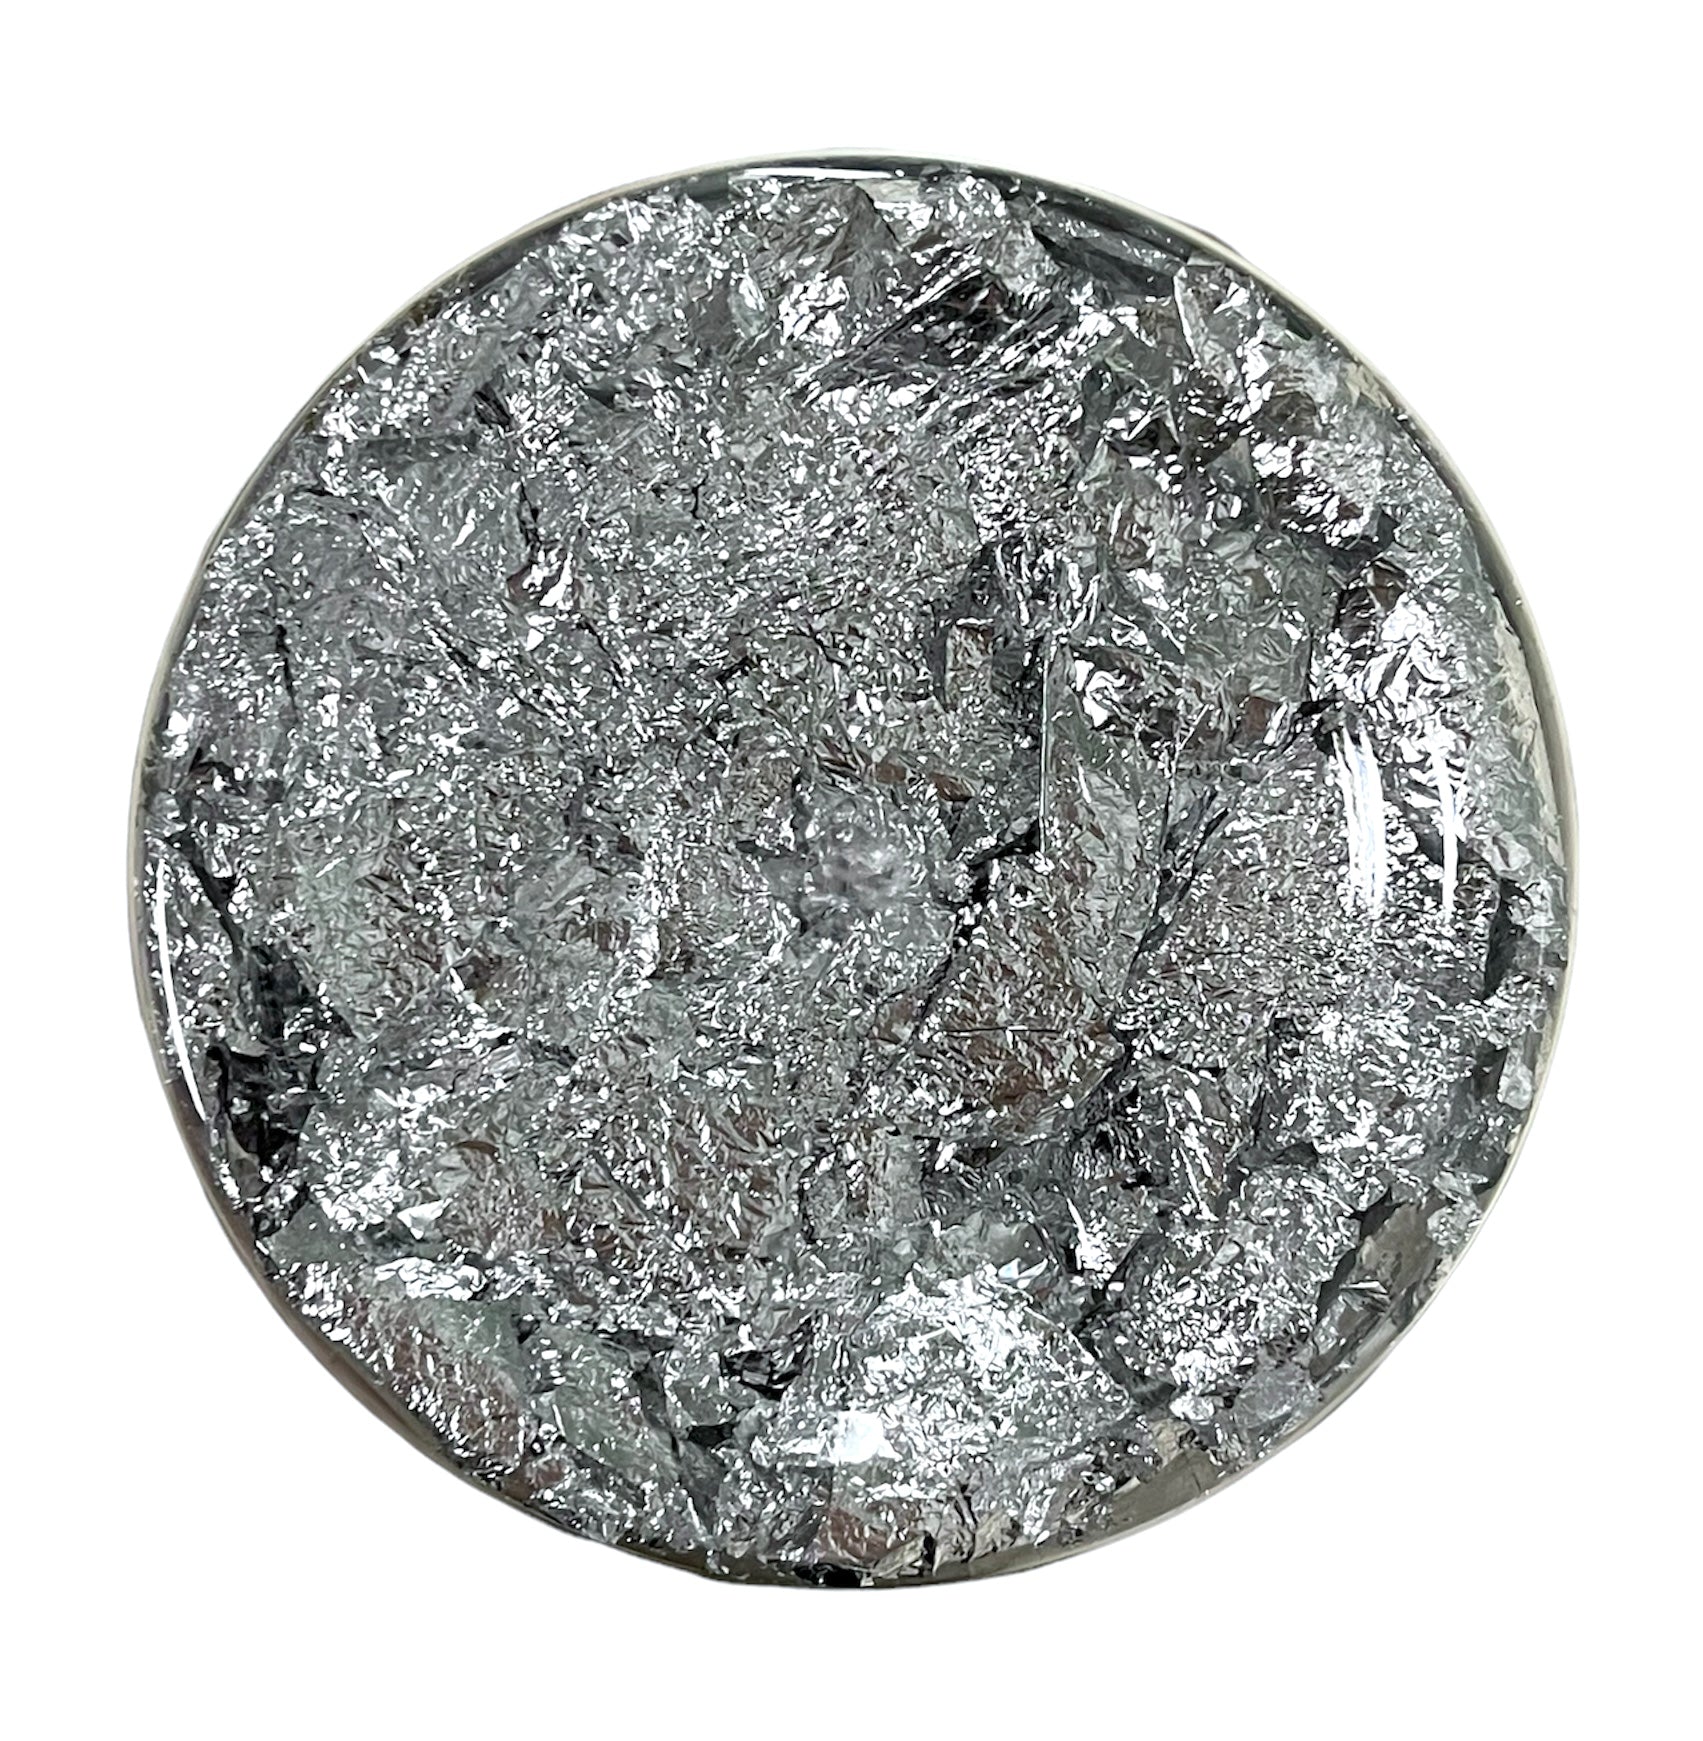 Prima - Finnabair - Art Metal Flakes - Silver